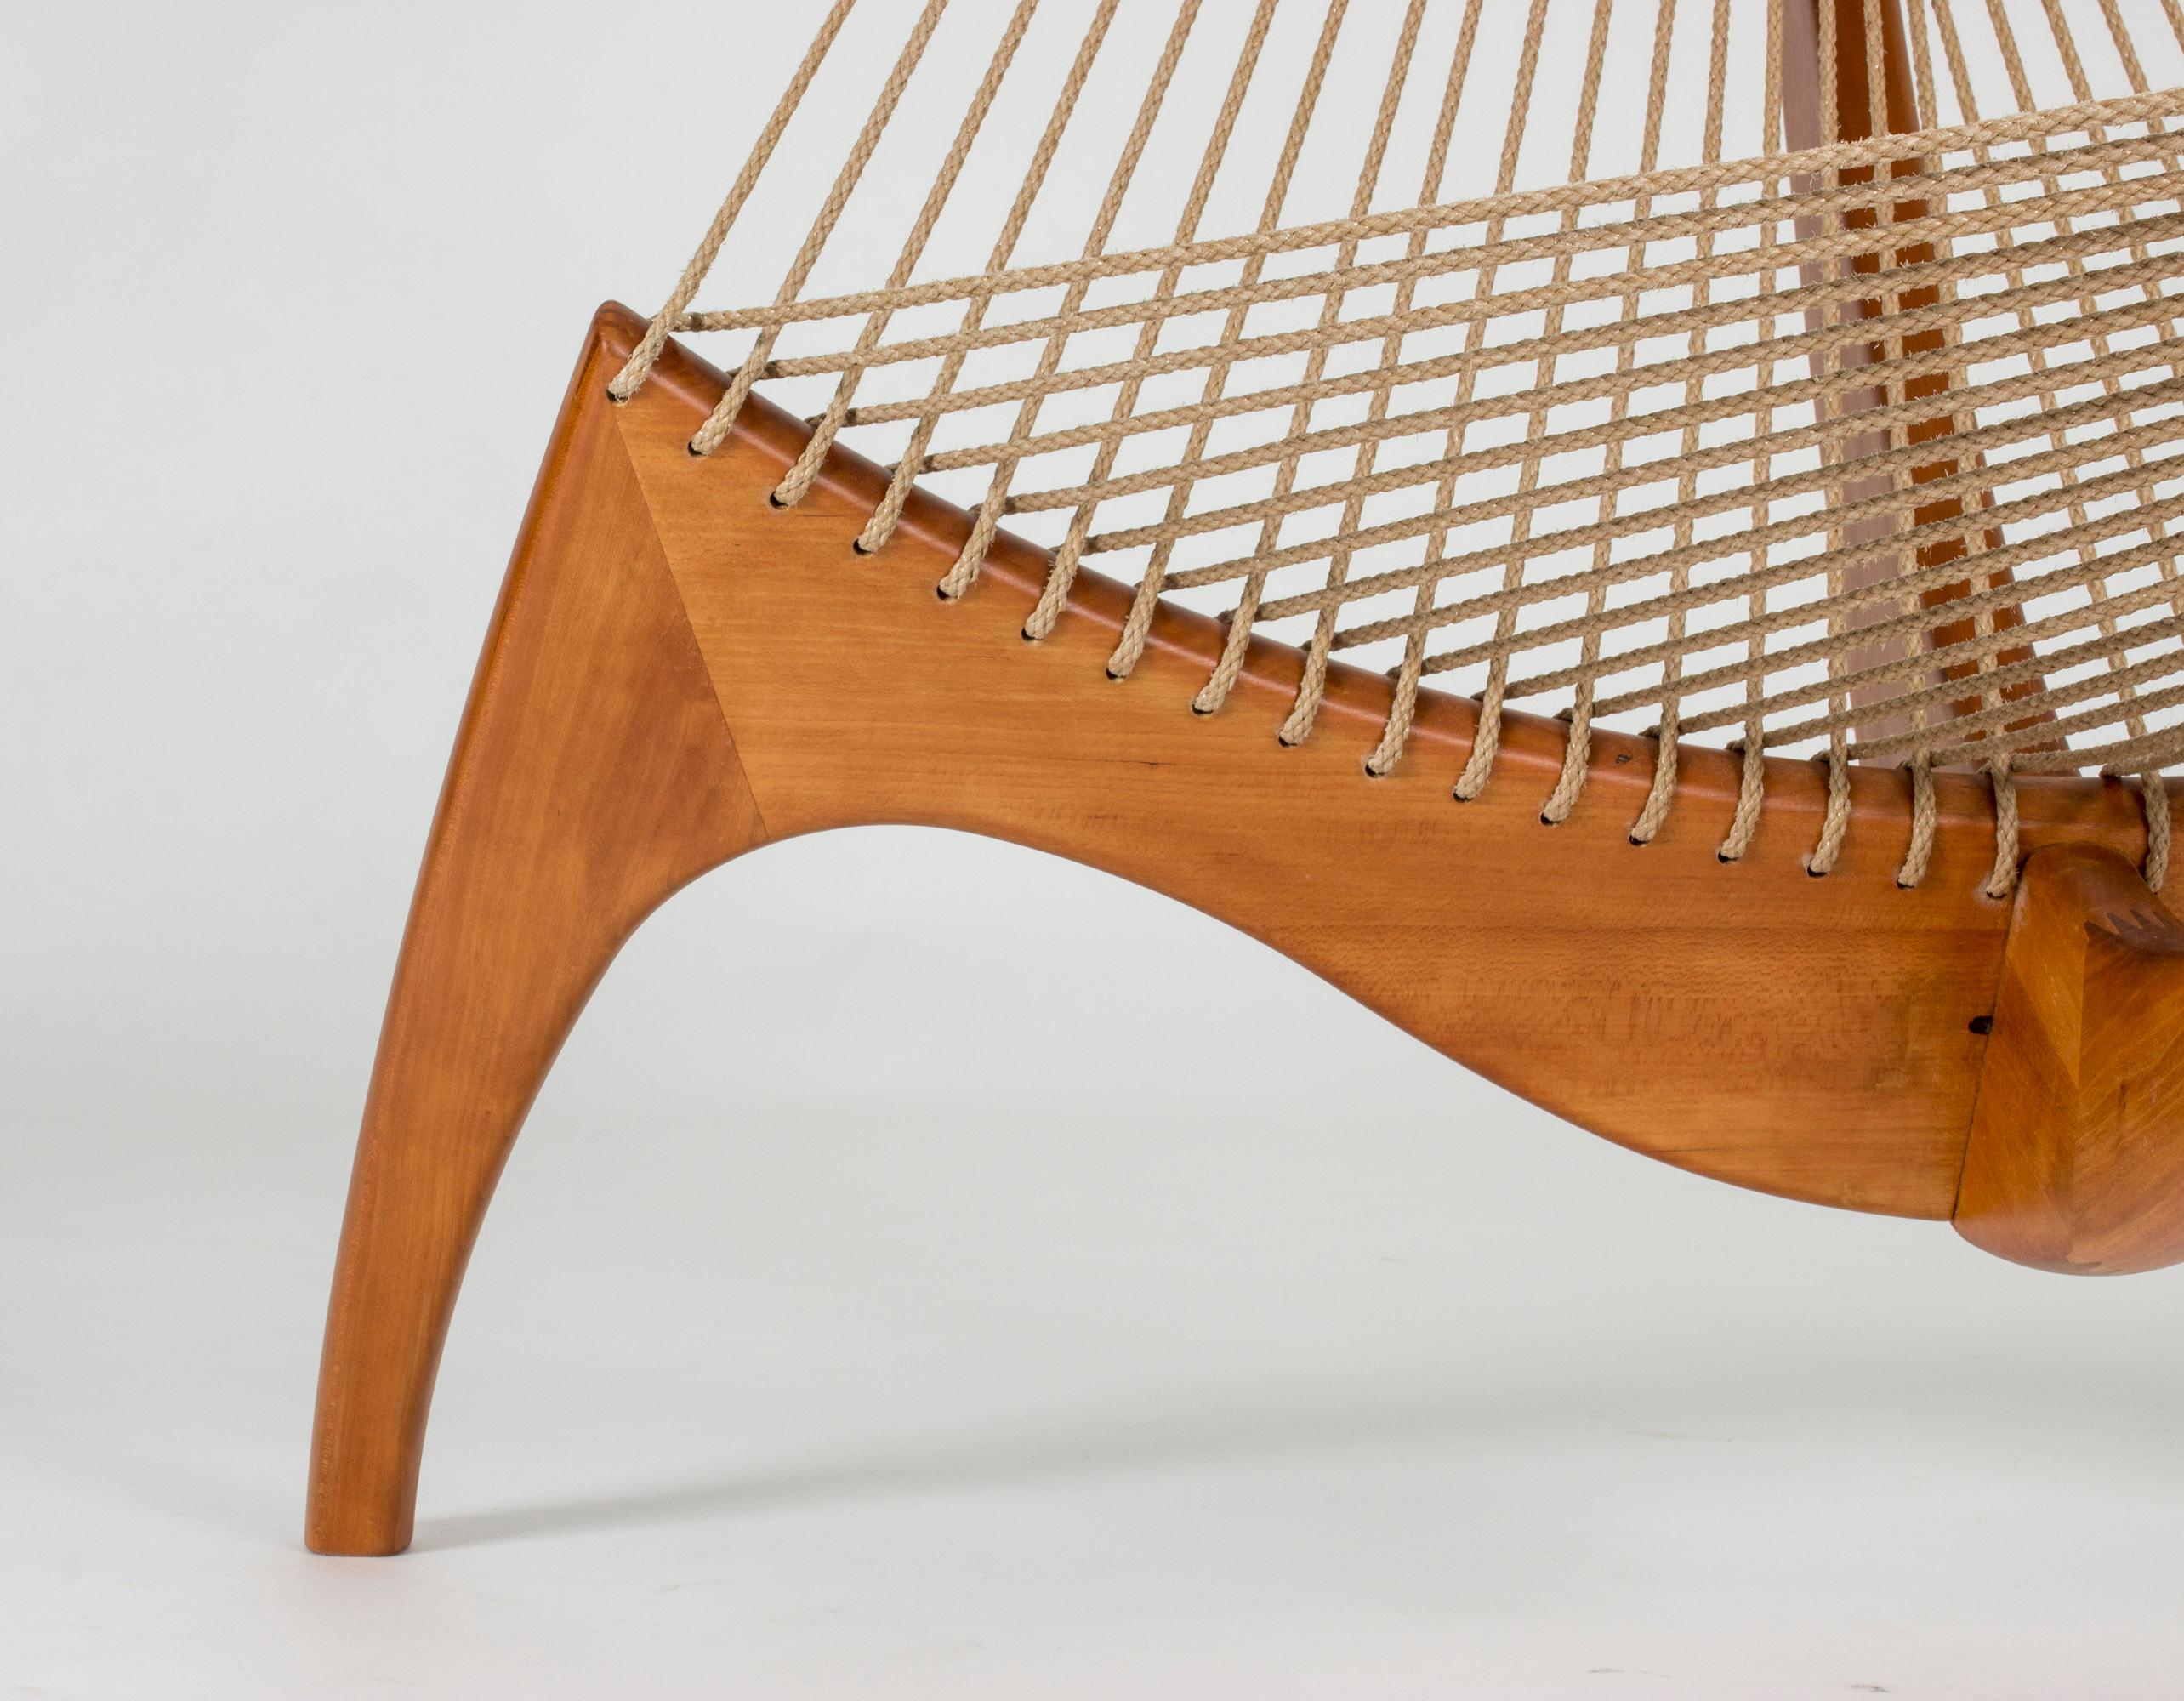 Rope “Harp Chair” by Jørgen Høvelskov